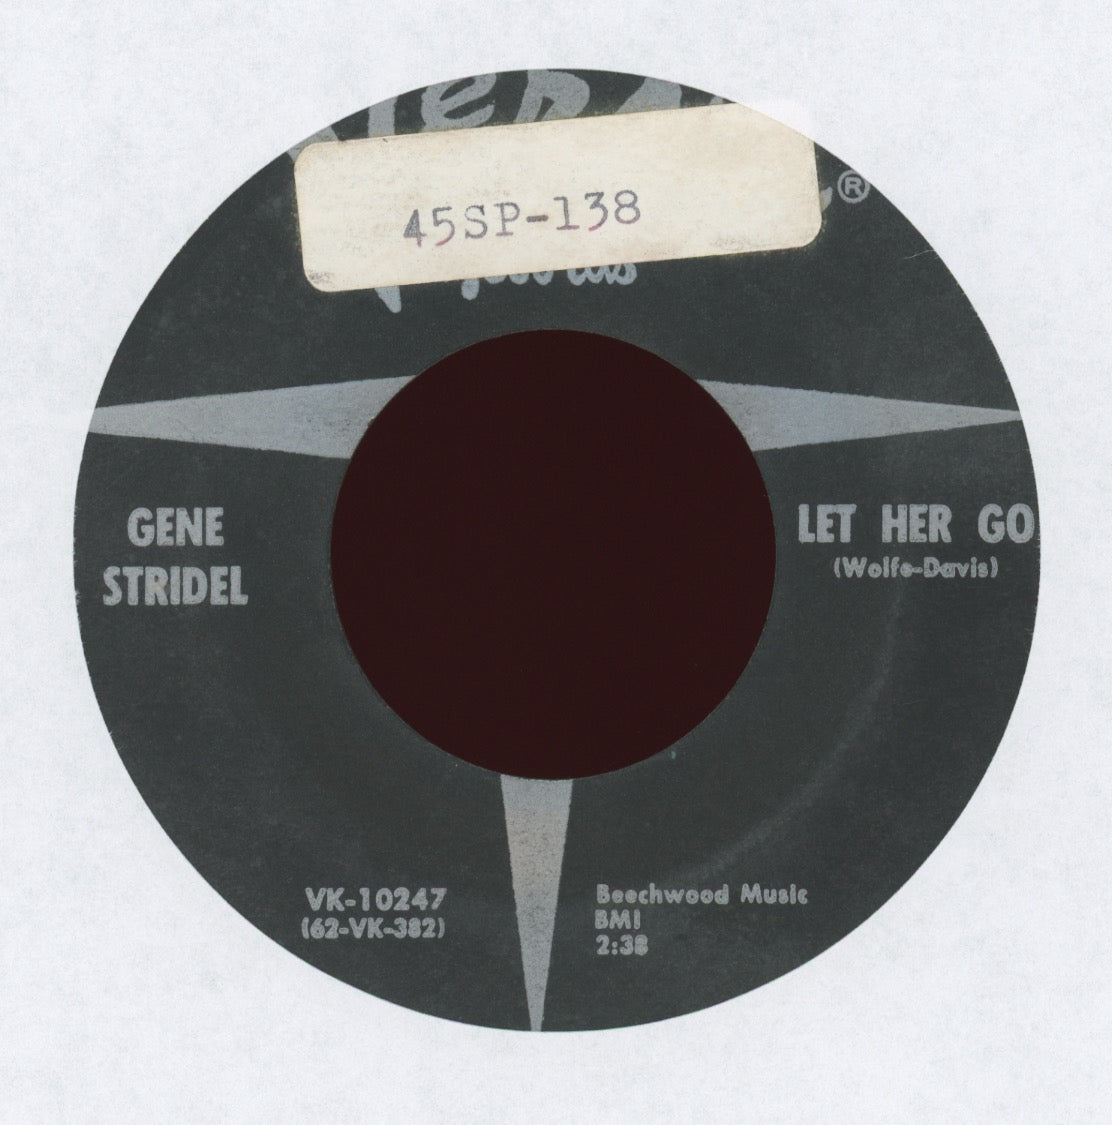 Gene Stridel - Let Her Go on Verve